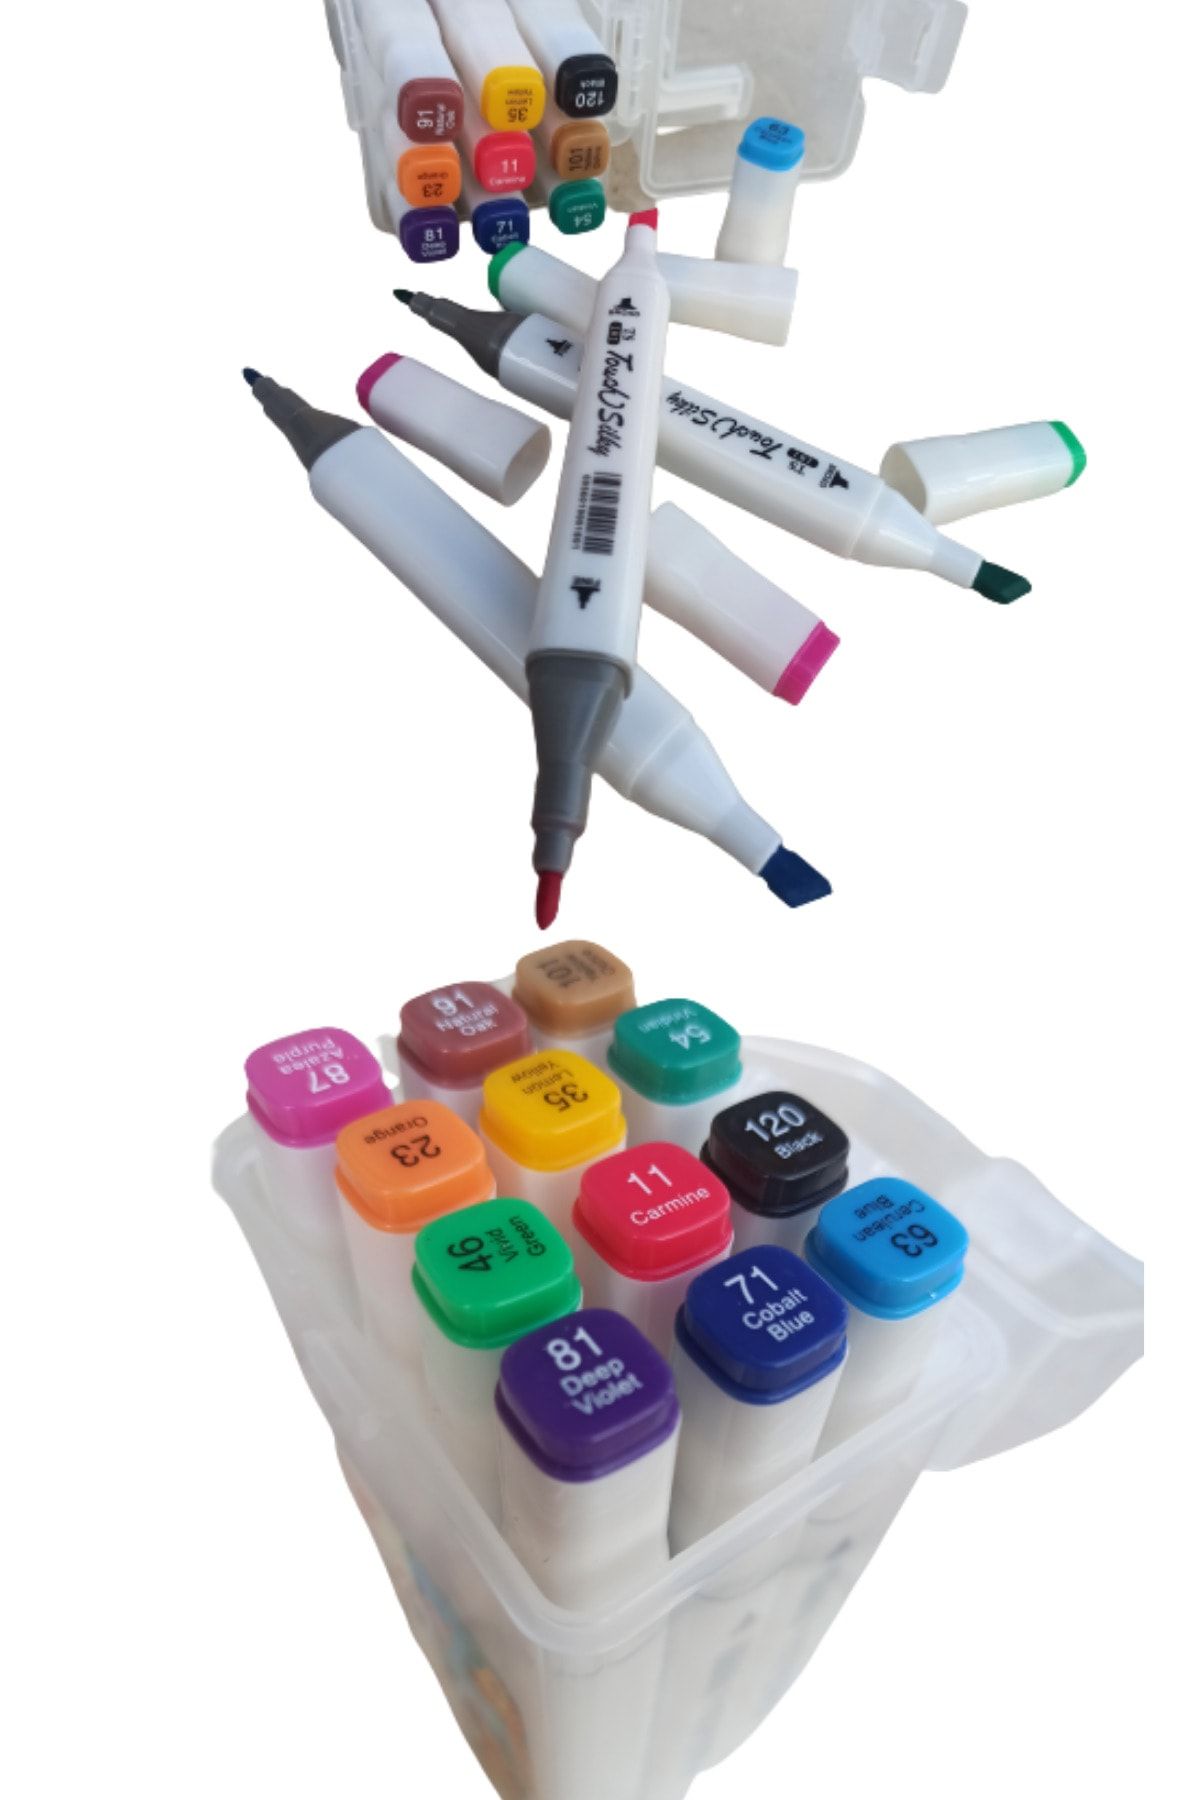 O&S Oyun ve Sanat Eğlen-Üret 12 Renk Keçeli Kalem, Çift Taraflı Marker Kalem, Kalın Ince Uçlu Ispirto Kalemi, Fosfor Kalemi